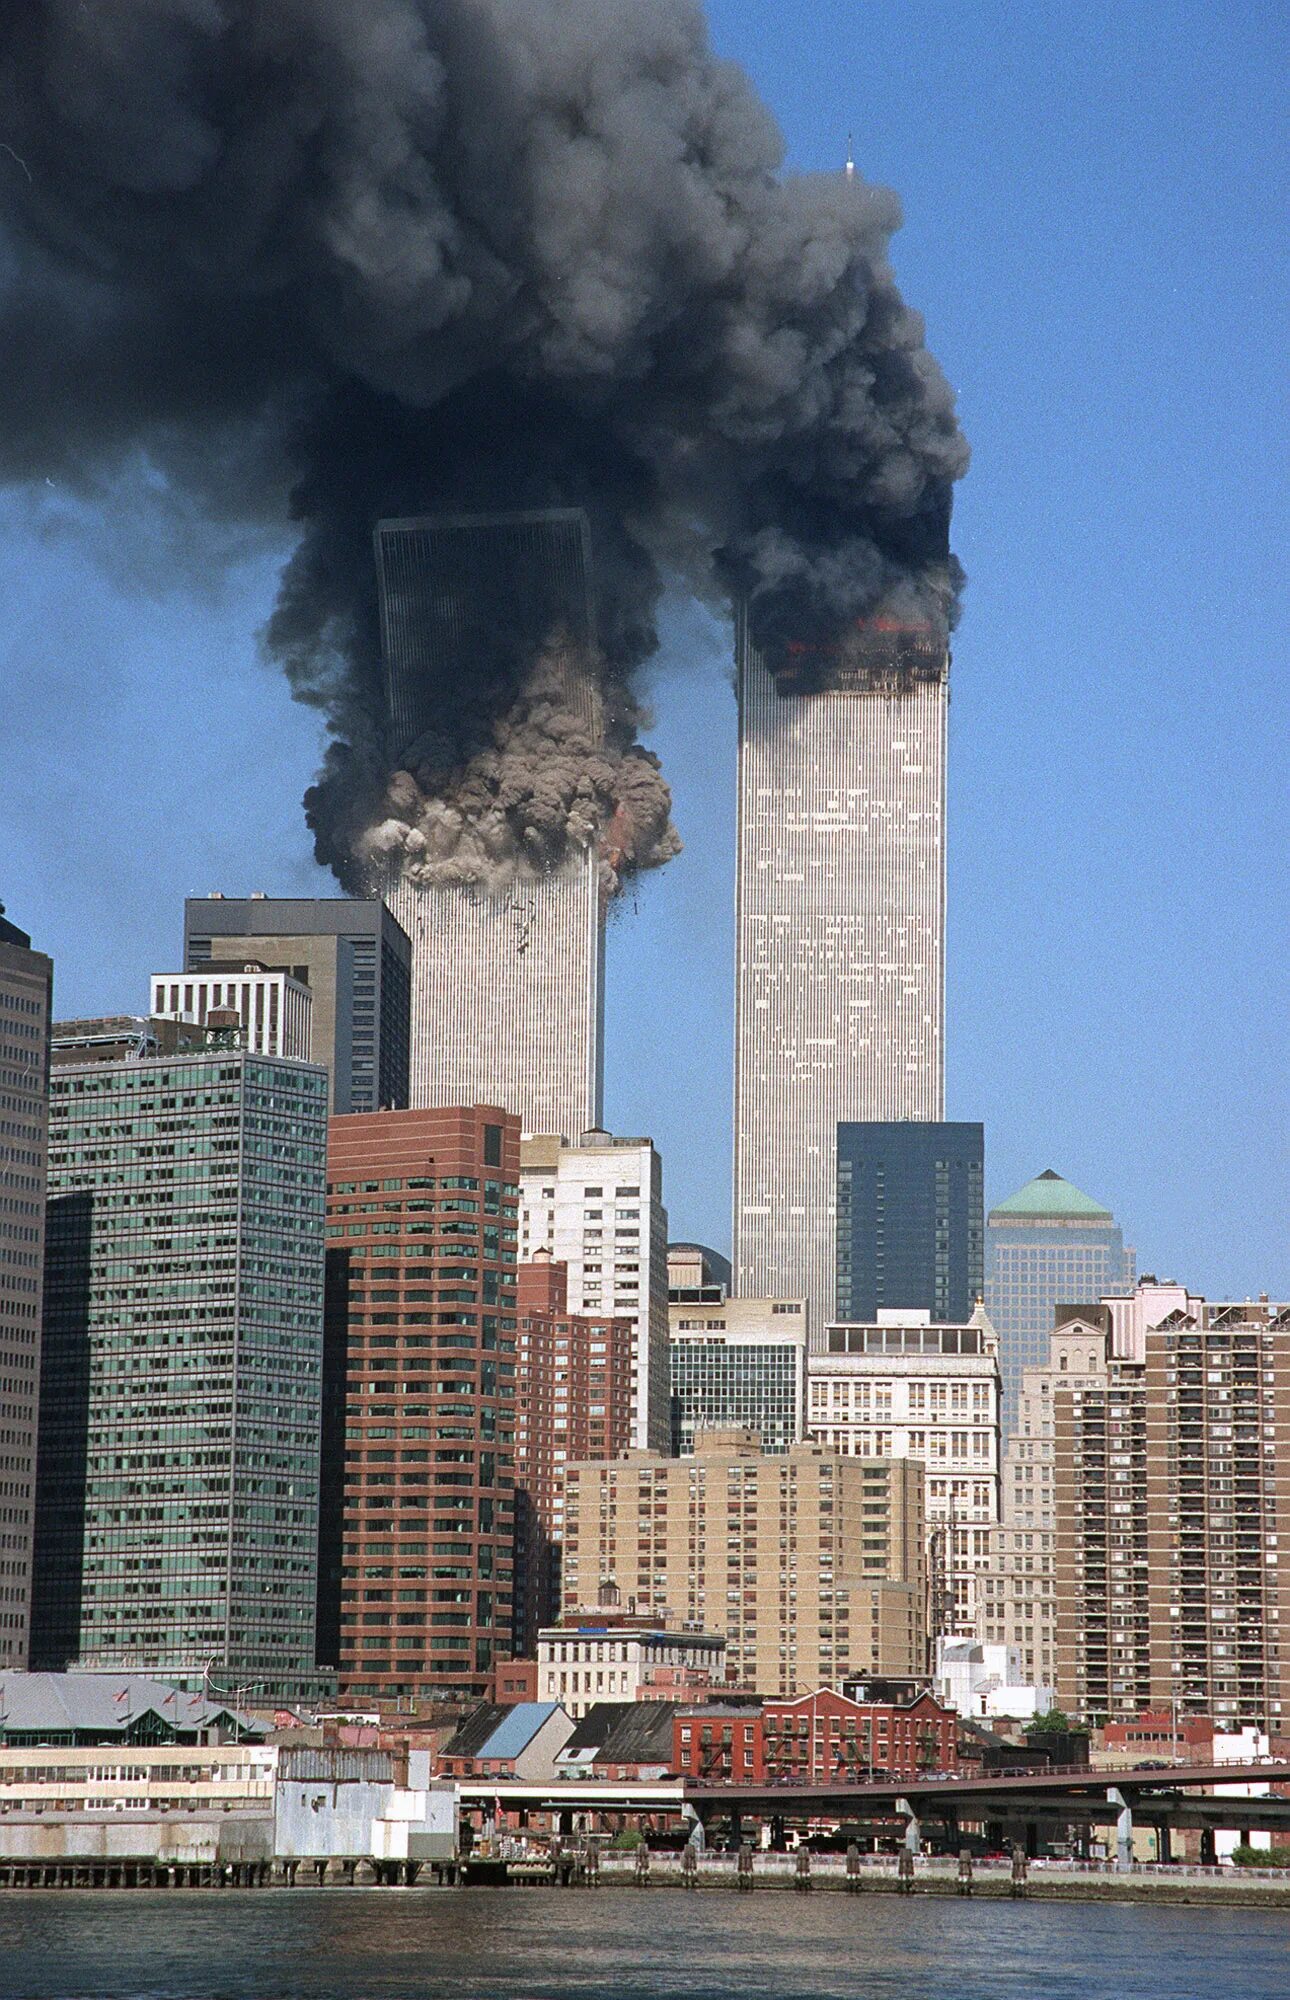 9 11 game. ВТЦ Нью-Йорк 2001. Всемирный торговый центр в Нью-Йорке 11 сентября 2001 года. Башни-Близнецы теракт 11 сентября 2001.